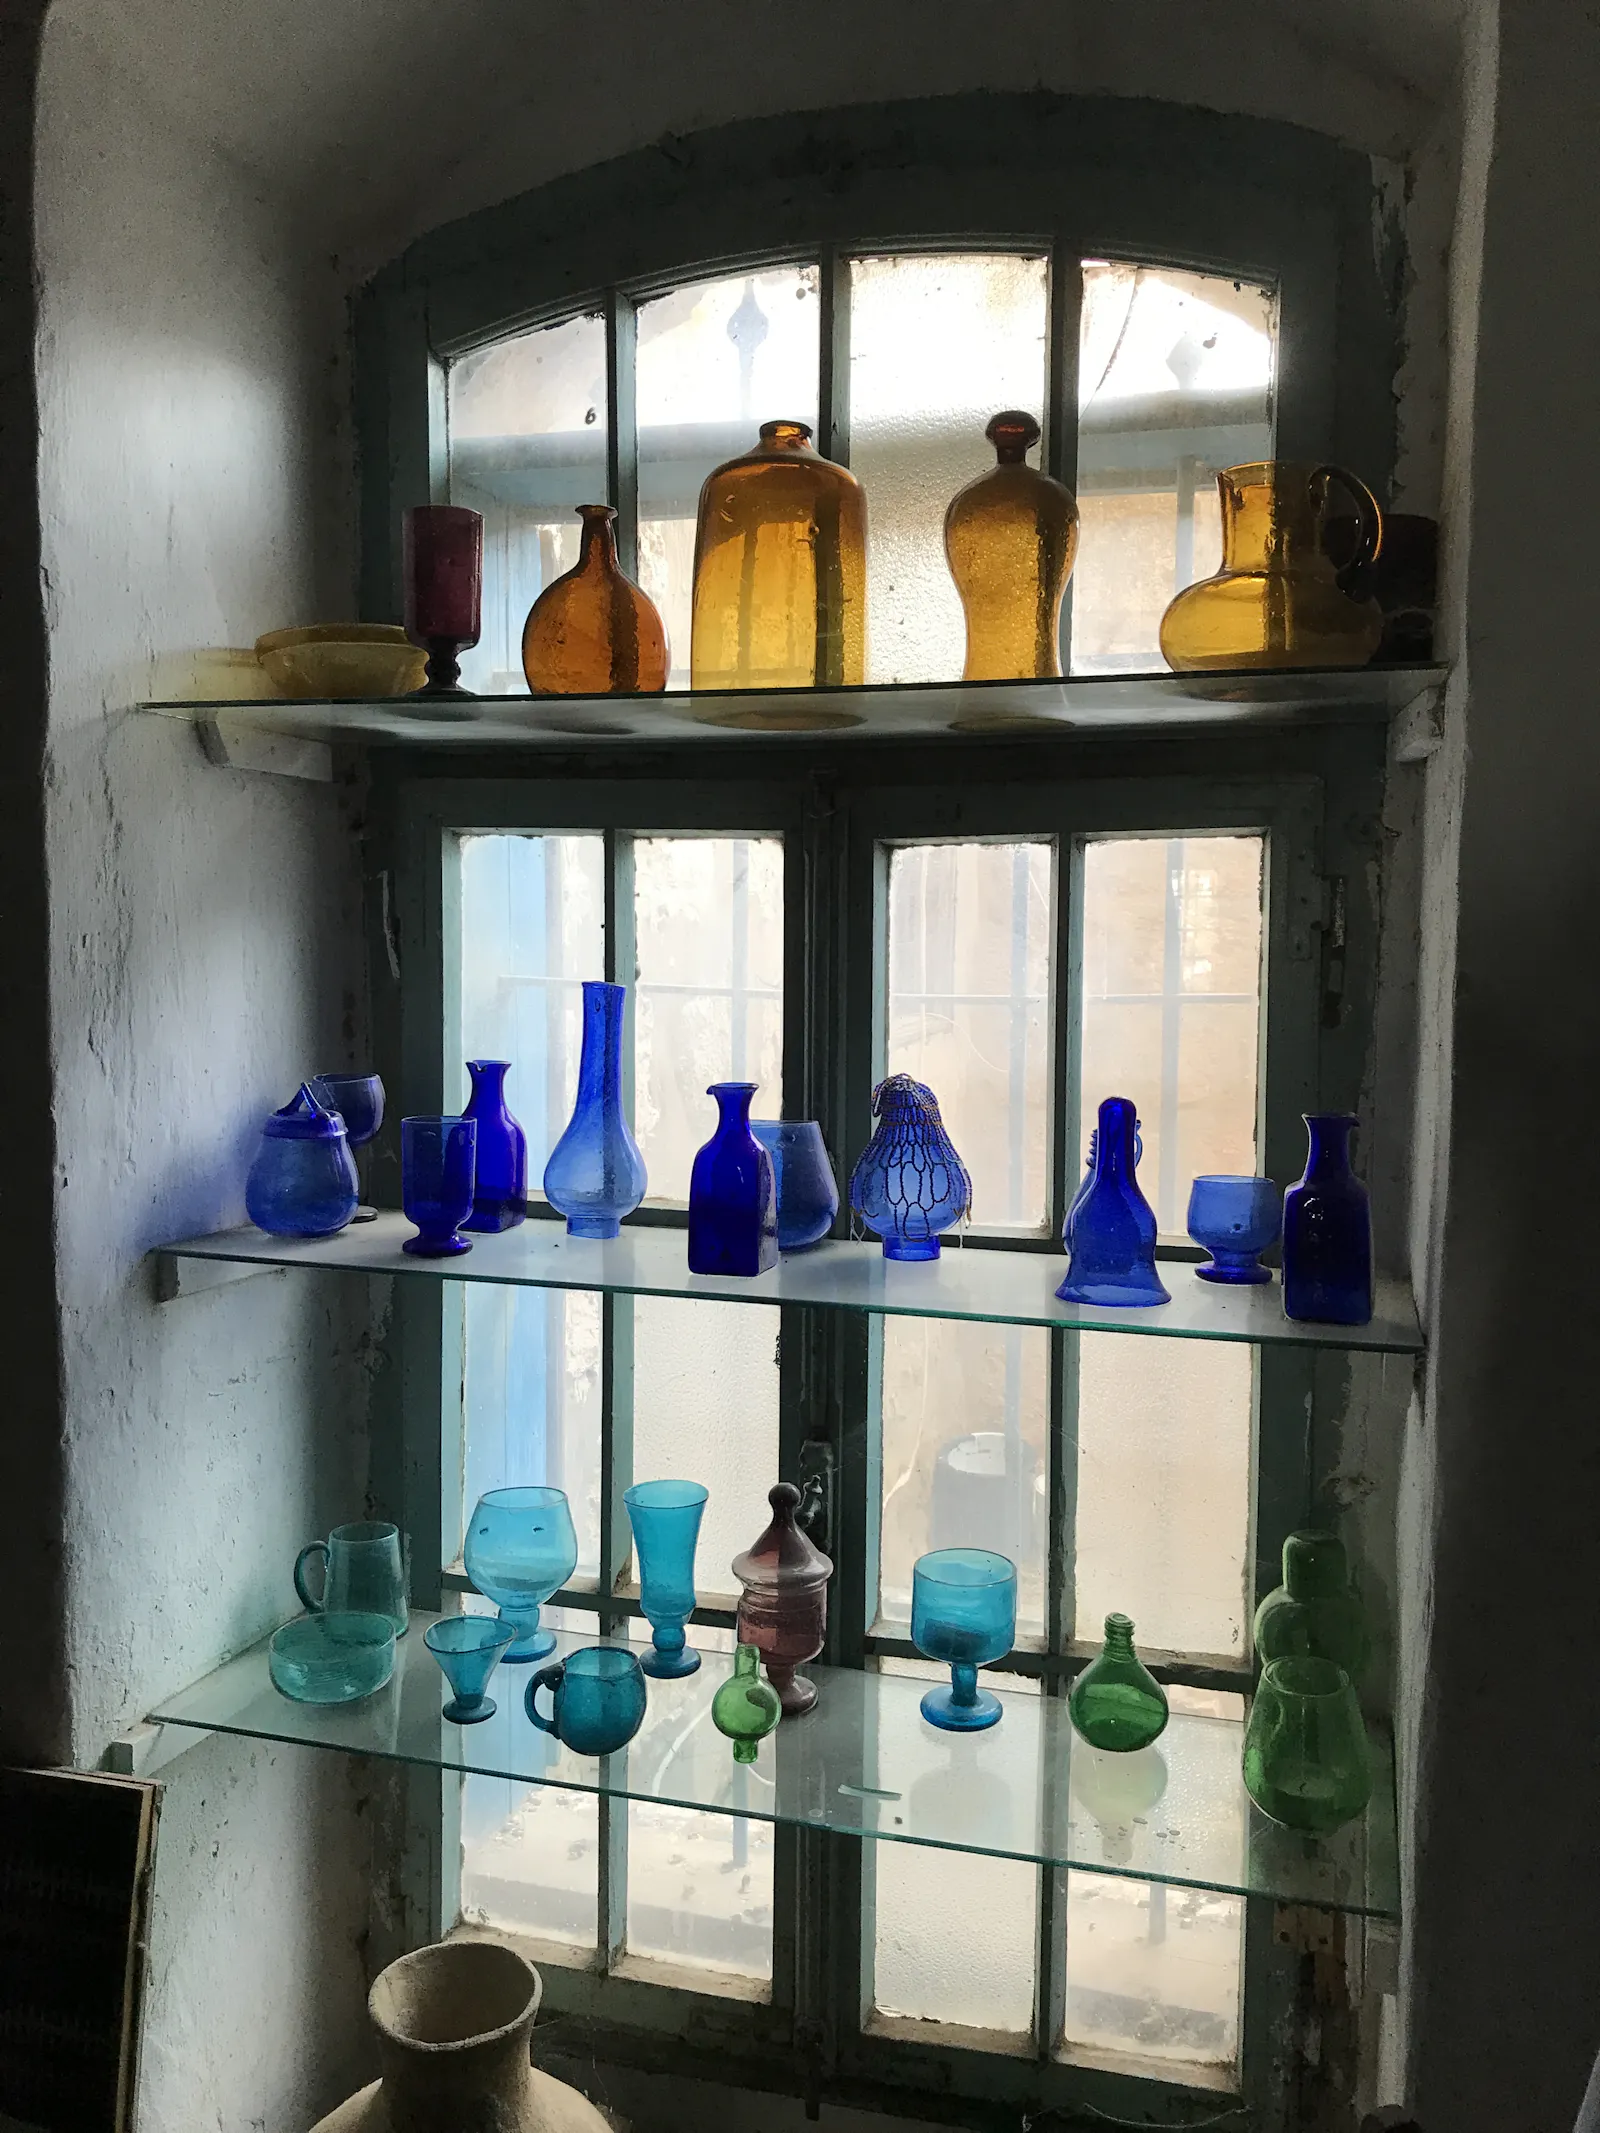 Flaschen verschiedenfarbig, karamellig, blau, türkis, grün in einem Fensterregal